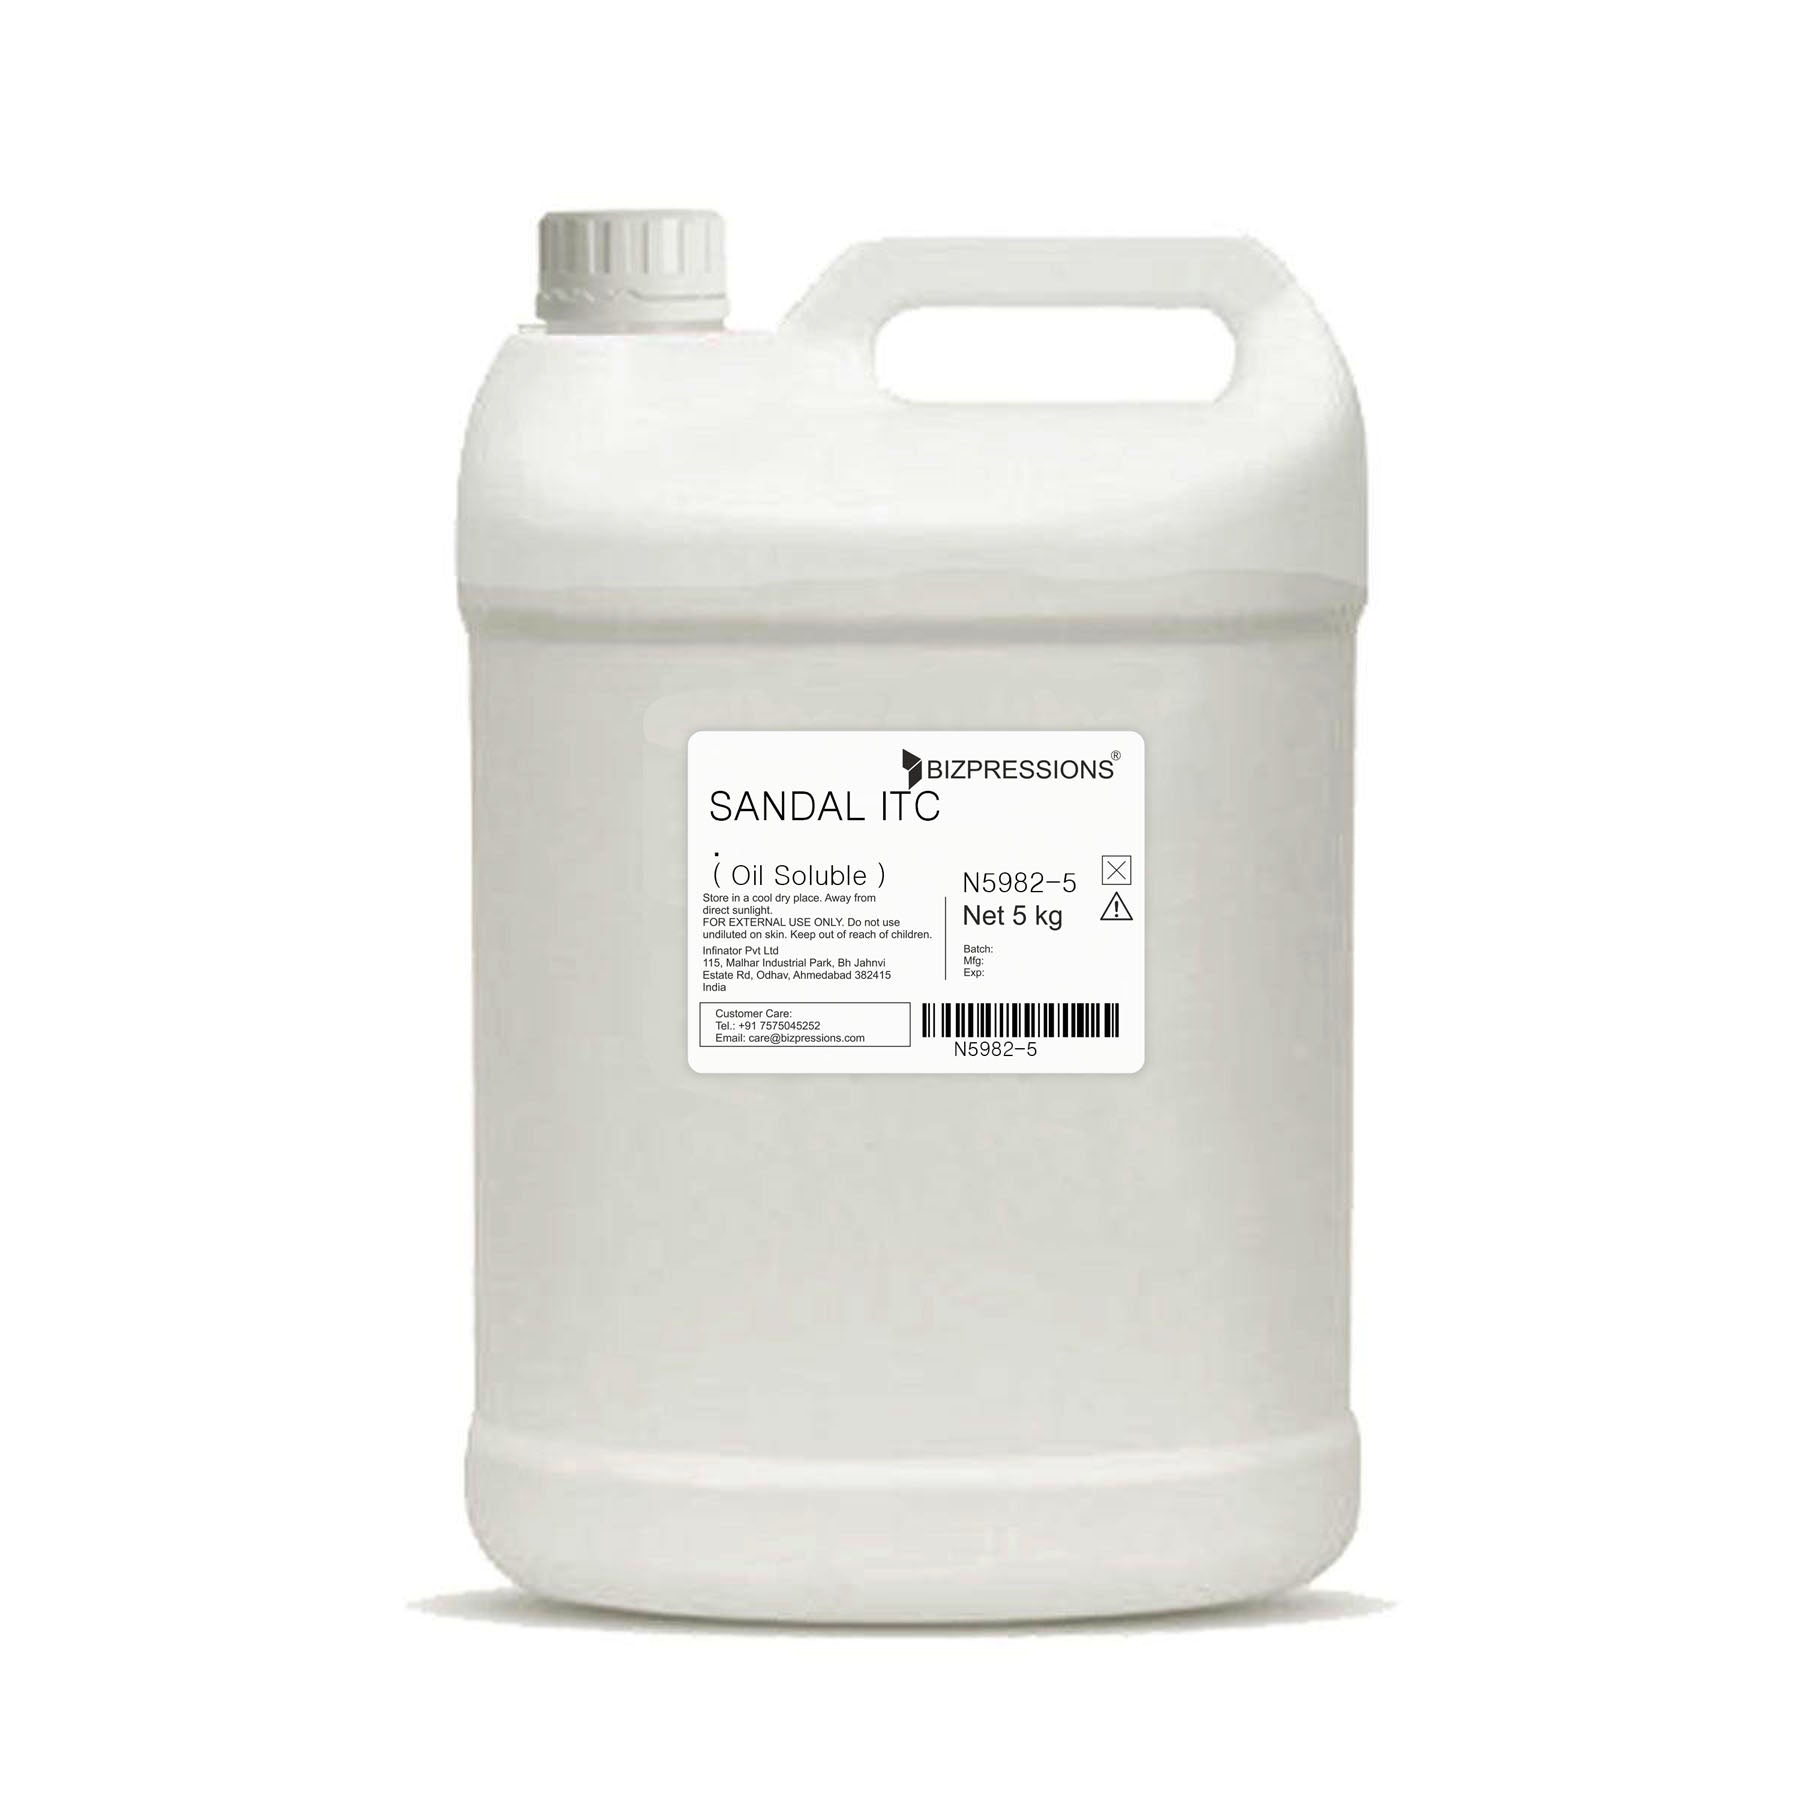 SANDAL ITC - Fragrance ( Oil Soluble ) - 5 kg